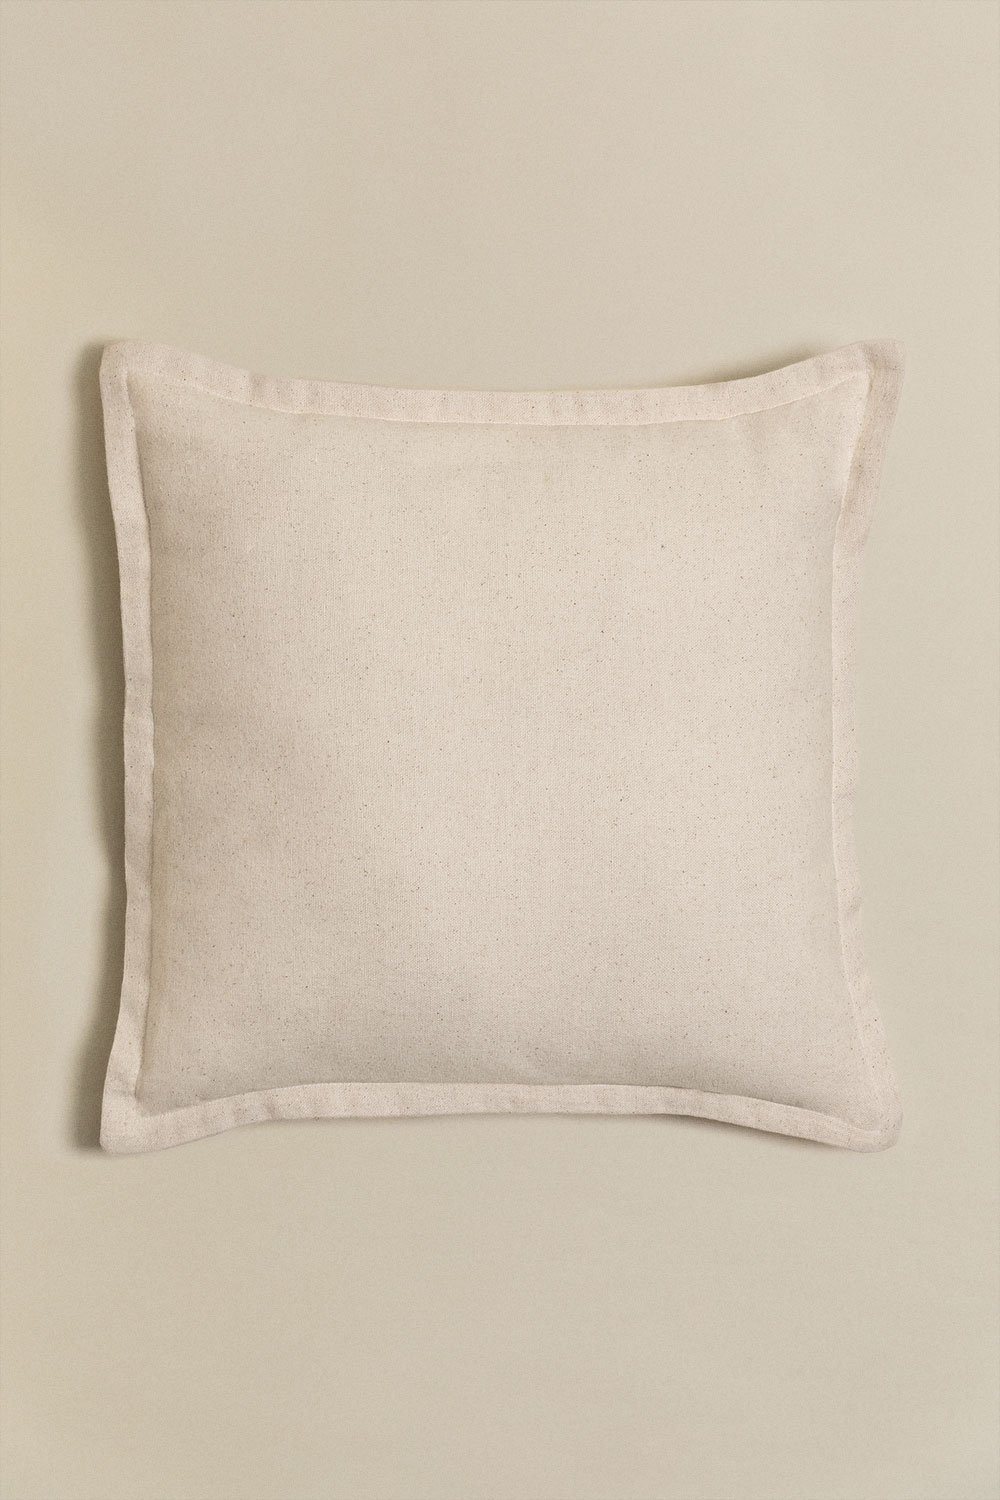 Cuscino quadrato in cotone (40x40 cm) Kerpen, immagine della galleria 1